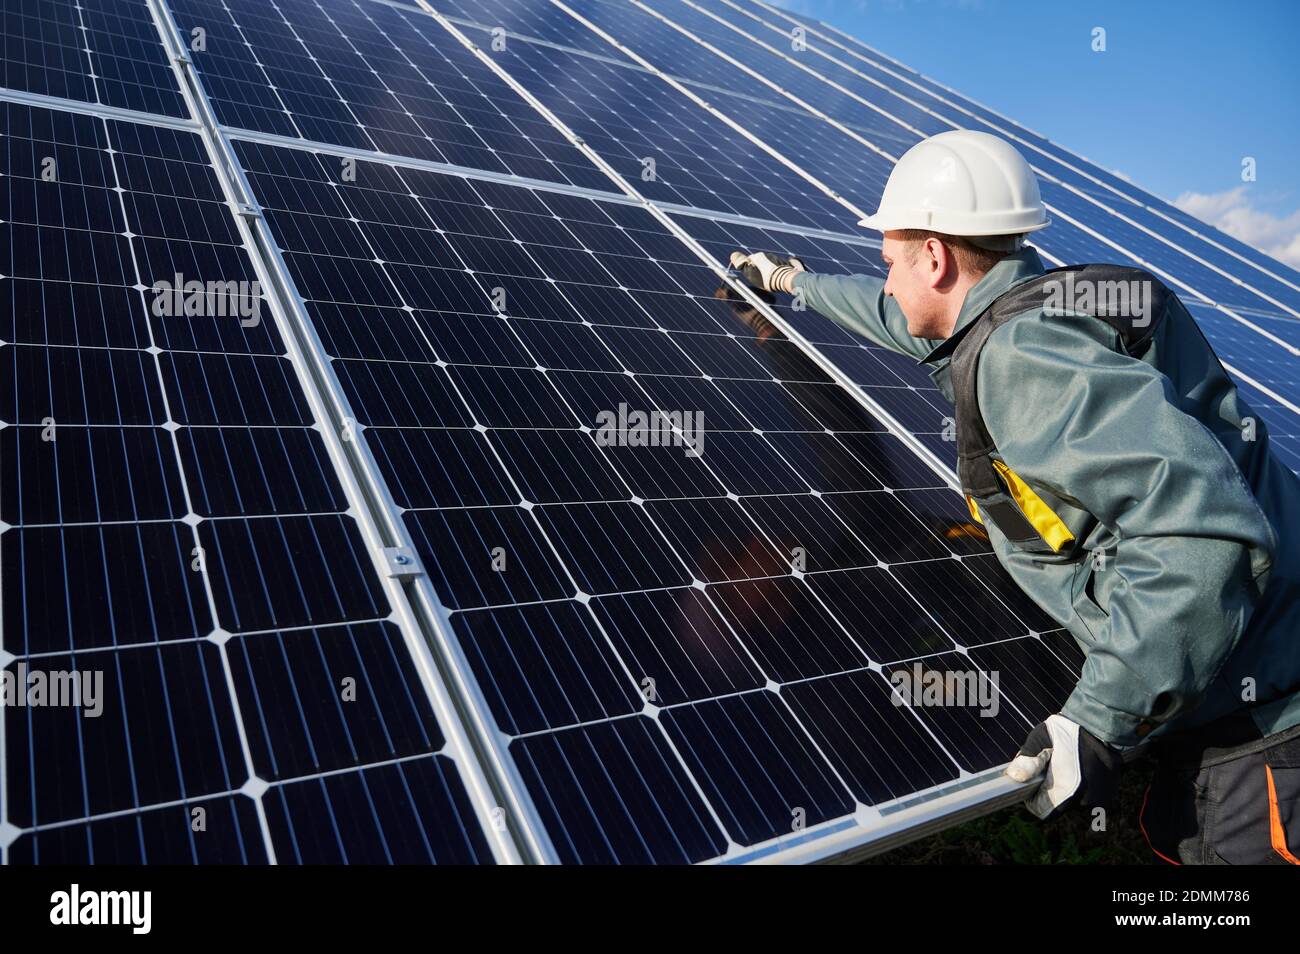 Hombre técnico en casco de seguridad reparando módulo solar fotovoltaico. Electricista en guantes que mantienen el sistema de paneles fotovoltaicos solares. Concepto de energía alternativa y recursos sostenibles de energía. Foto de stock